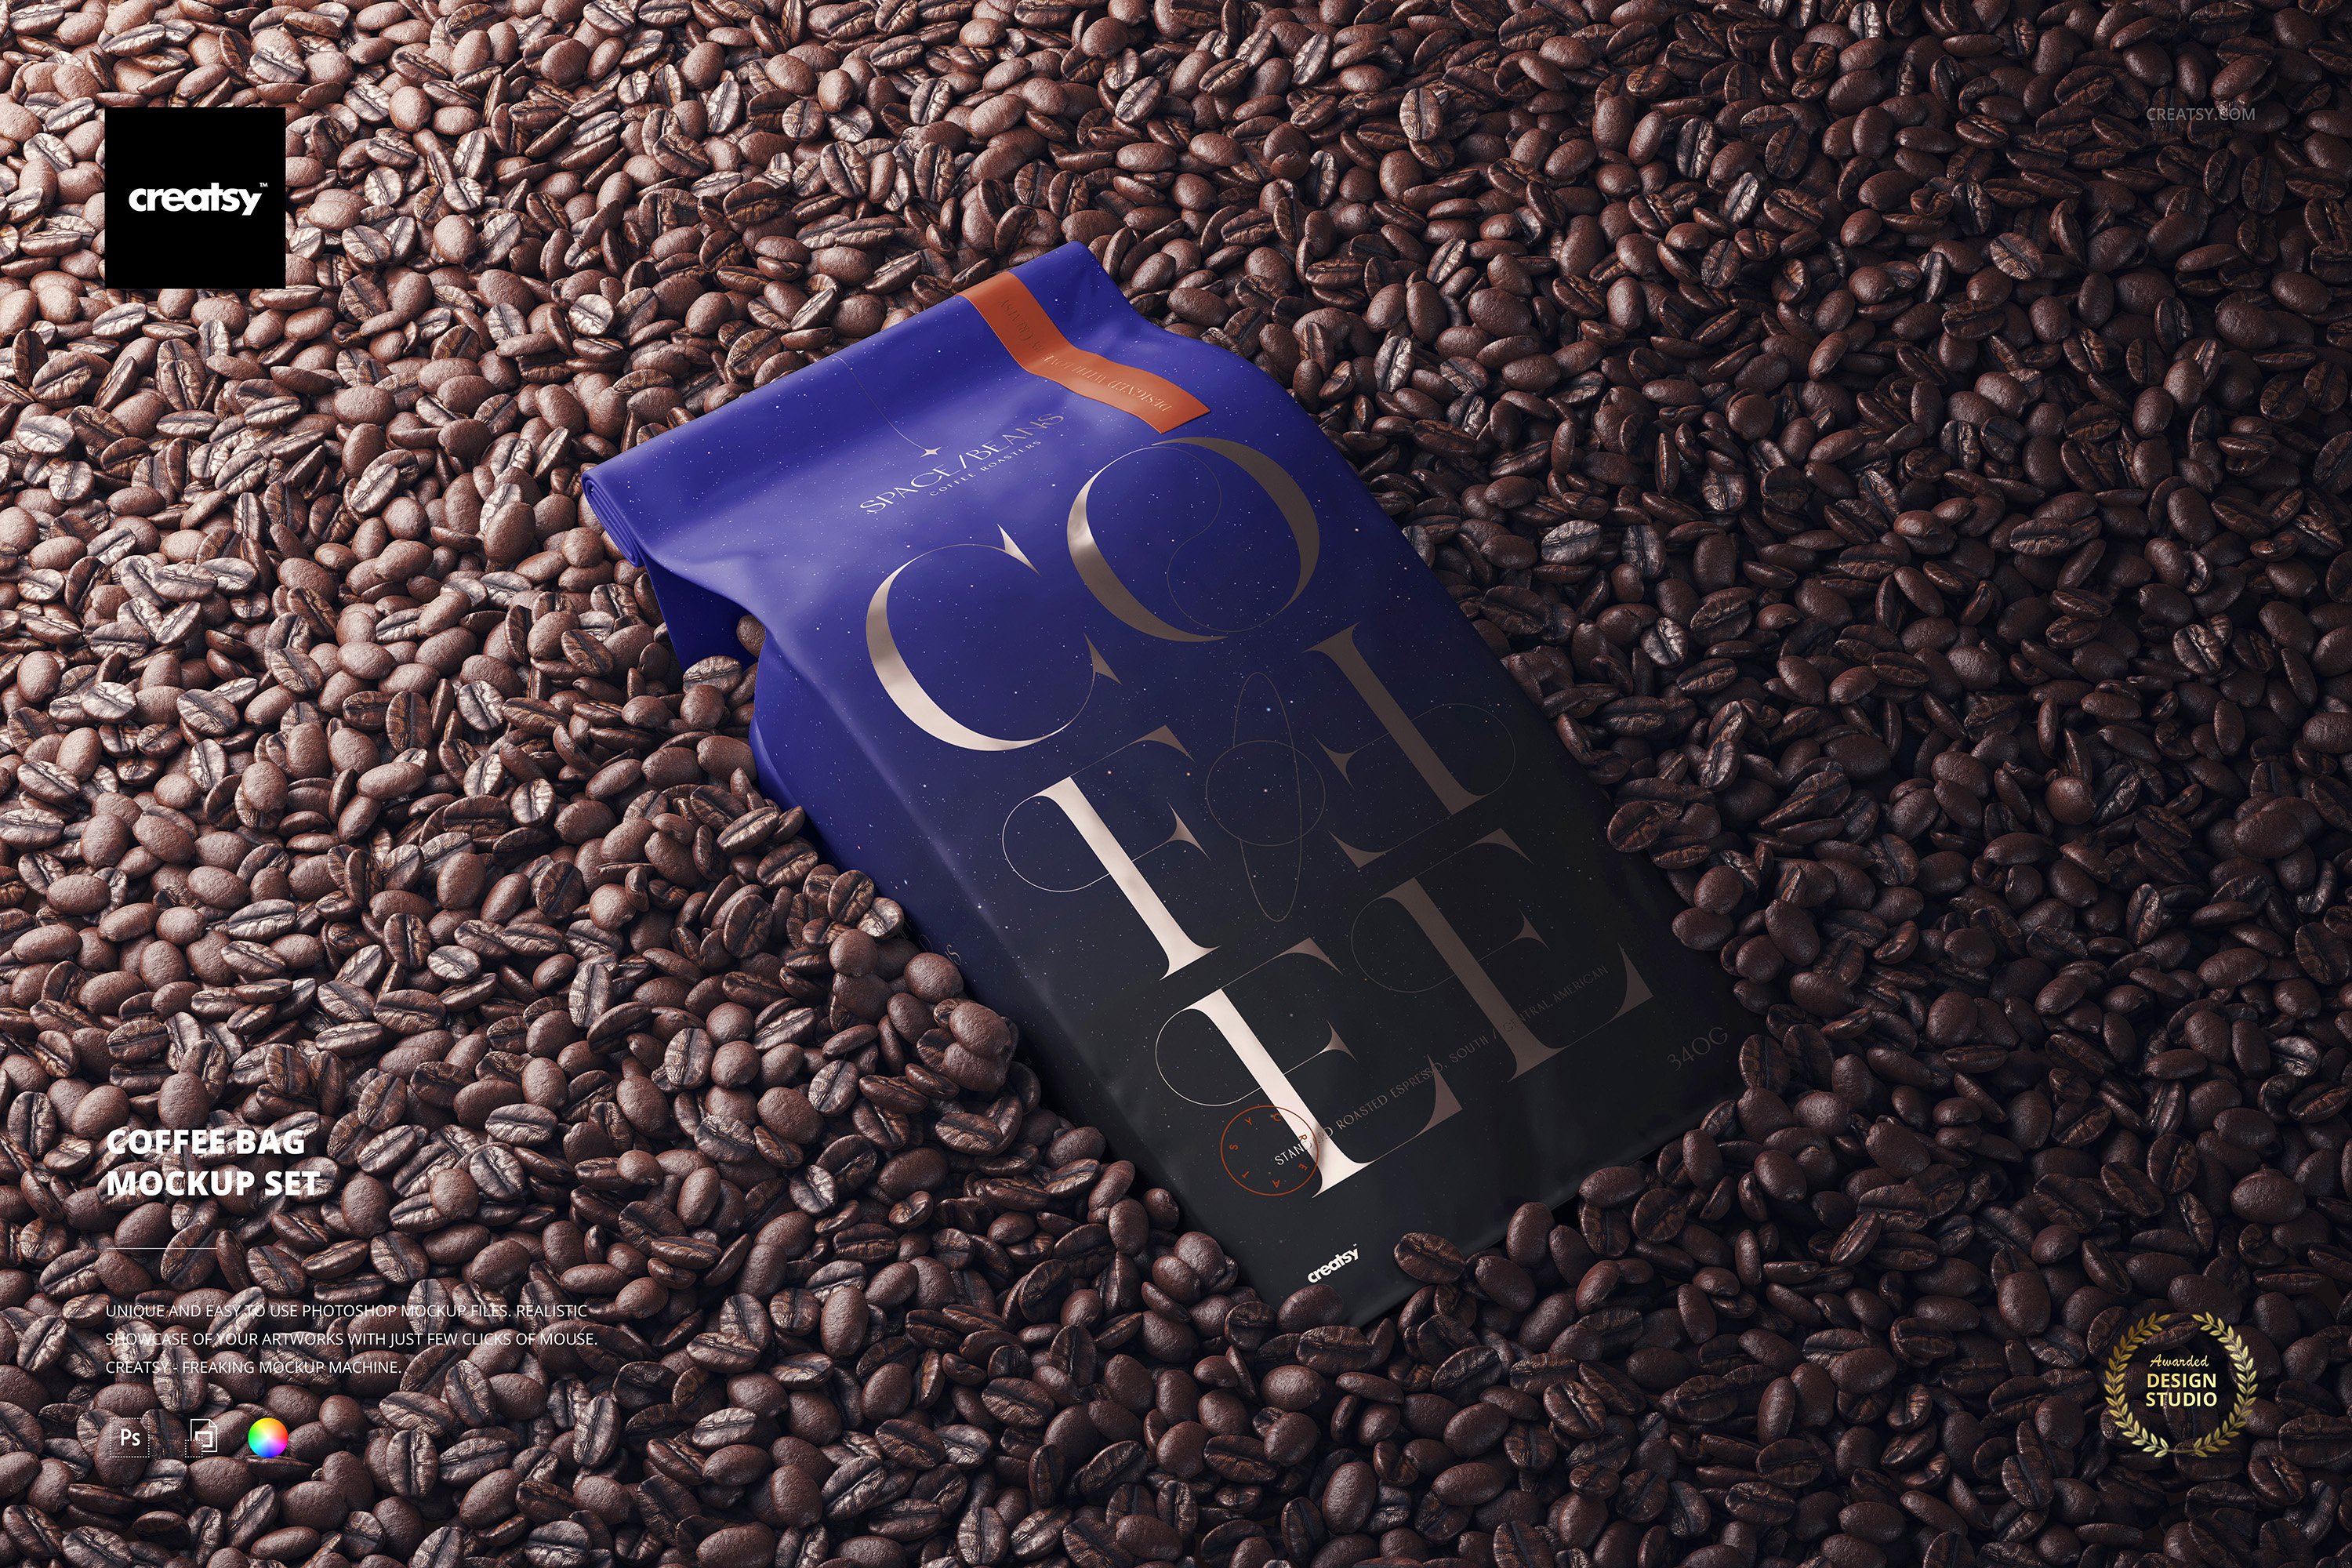 Coffee Bag Mockup Set cover image.